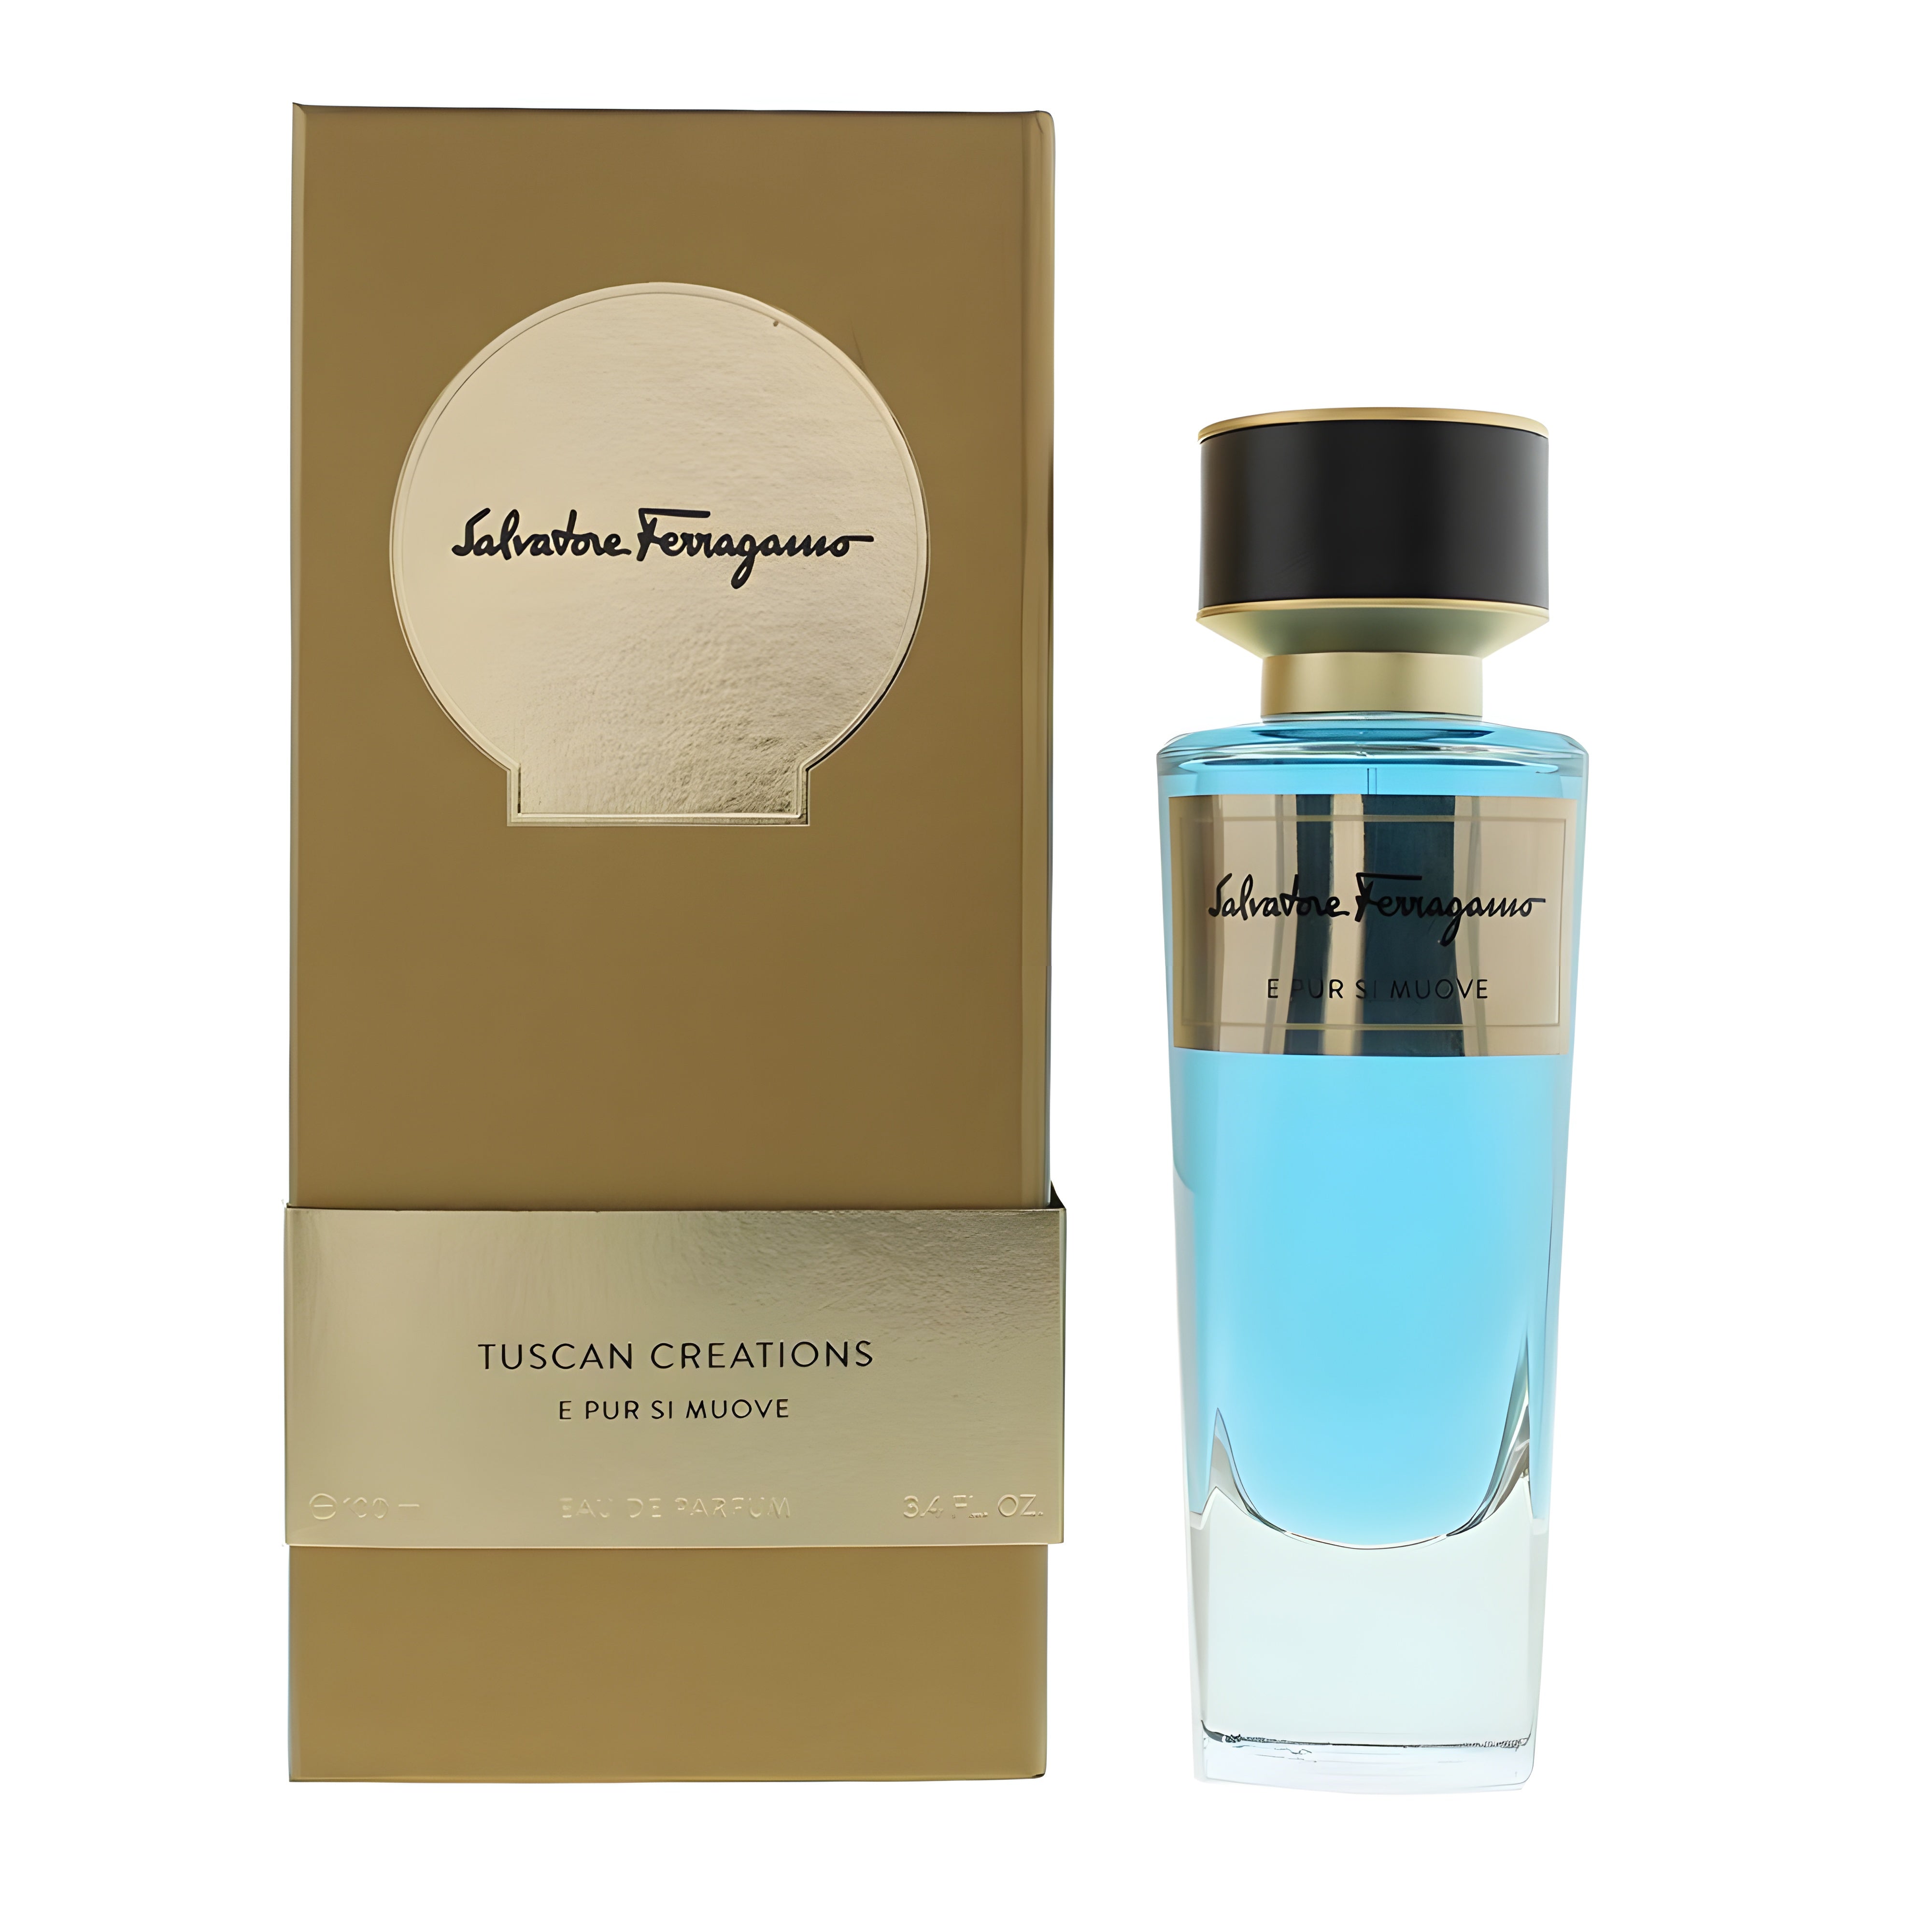 Salvatore Ferragamo E Pur Si Muove EDP | My Perfume Shop Australia